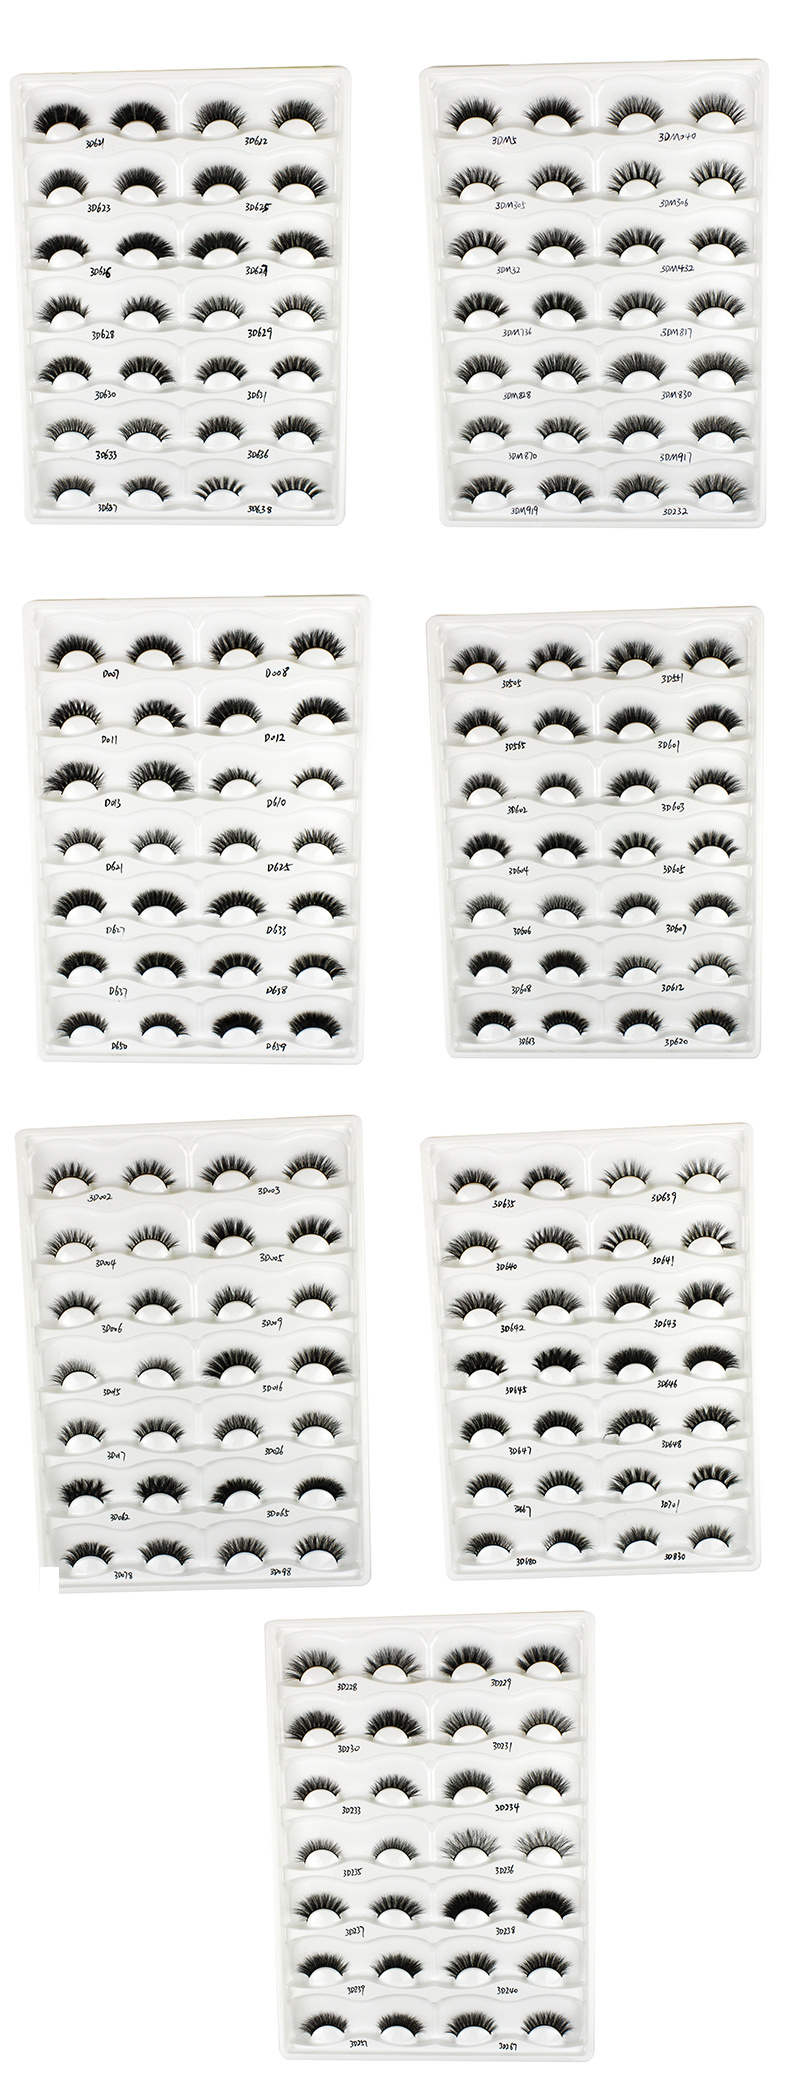 Wholesale 100% Mink Eyelash 25mm Mink Lashes 3D Mink Eyelashes